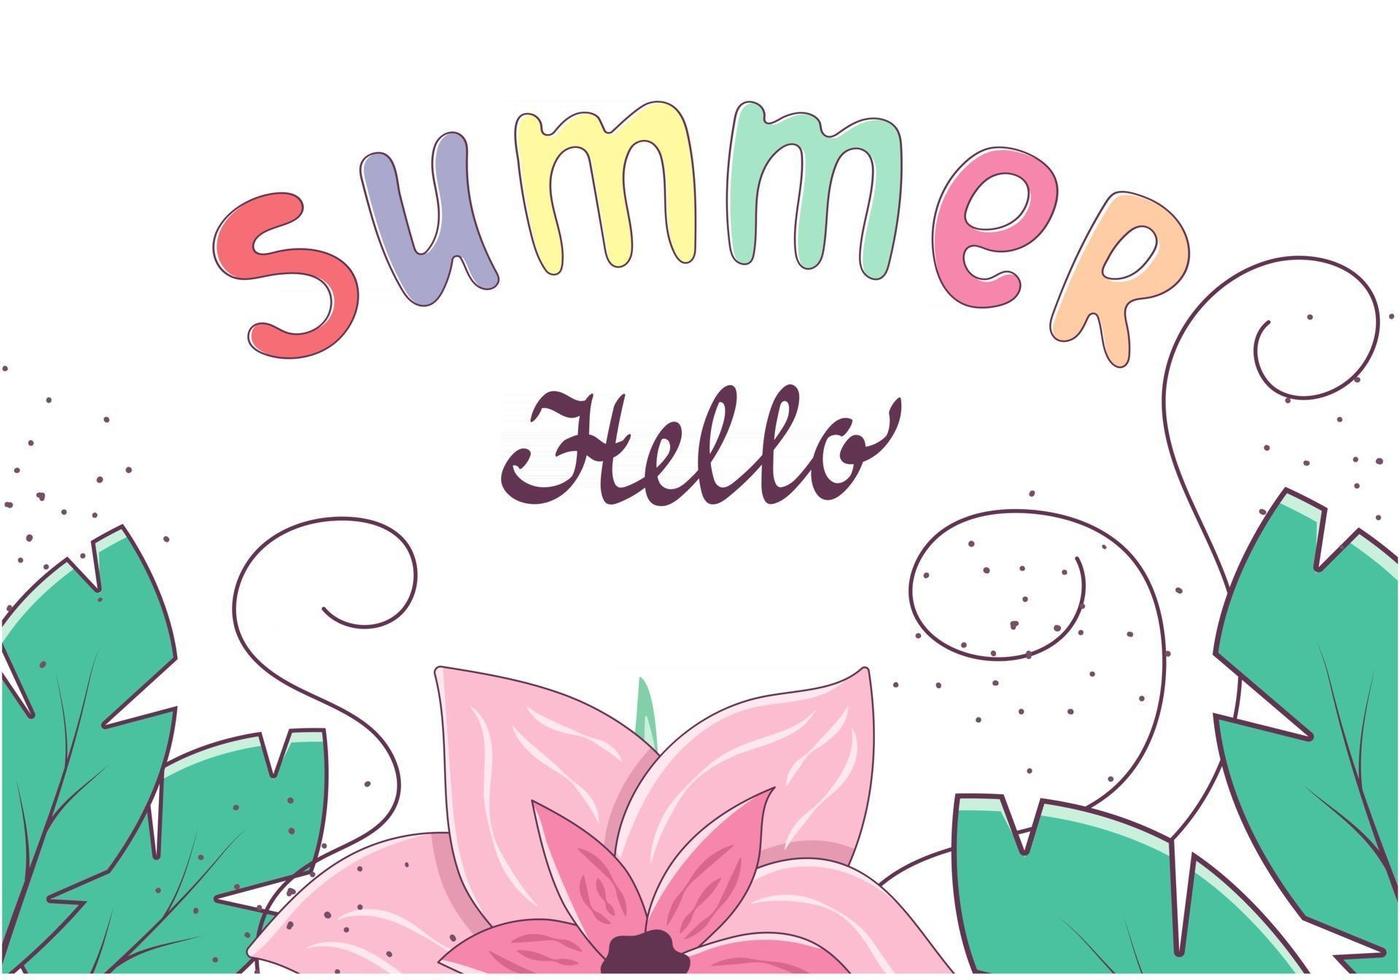 ciao modello di banner estivo con scritte luminose e fiori e foglie tropicali isolati su sfondo bianco. illustrazione vettoriale sul tema delle vacanze estive